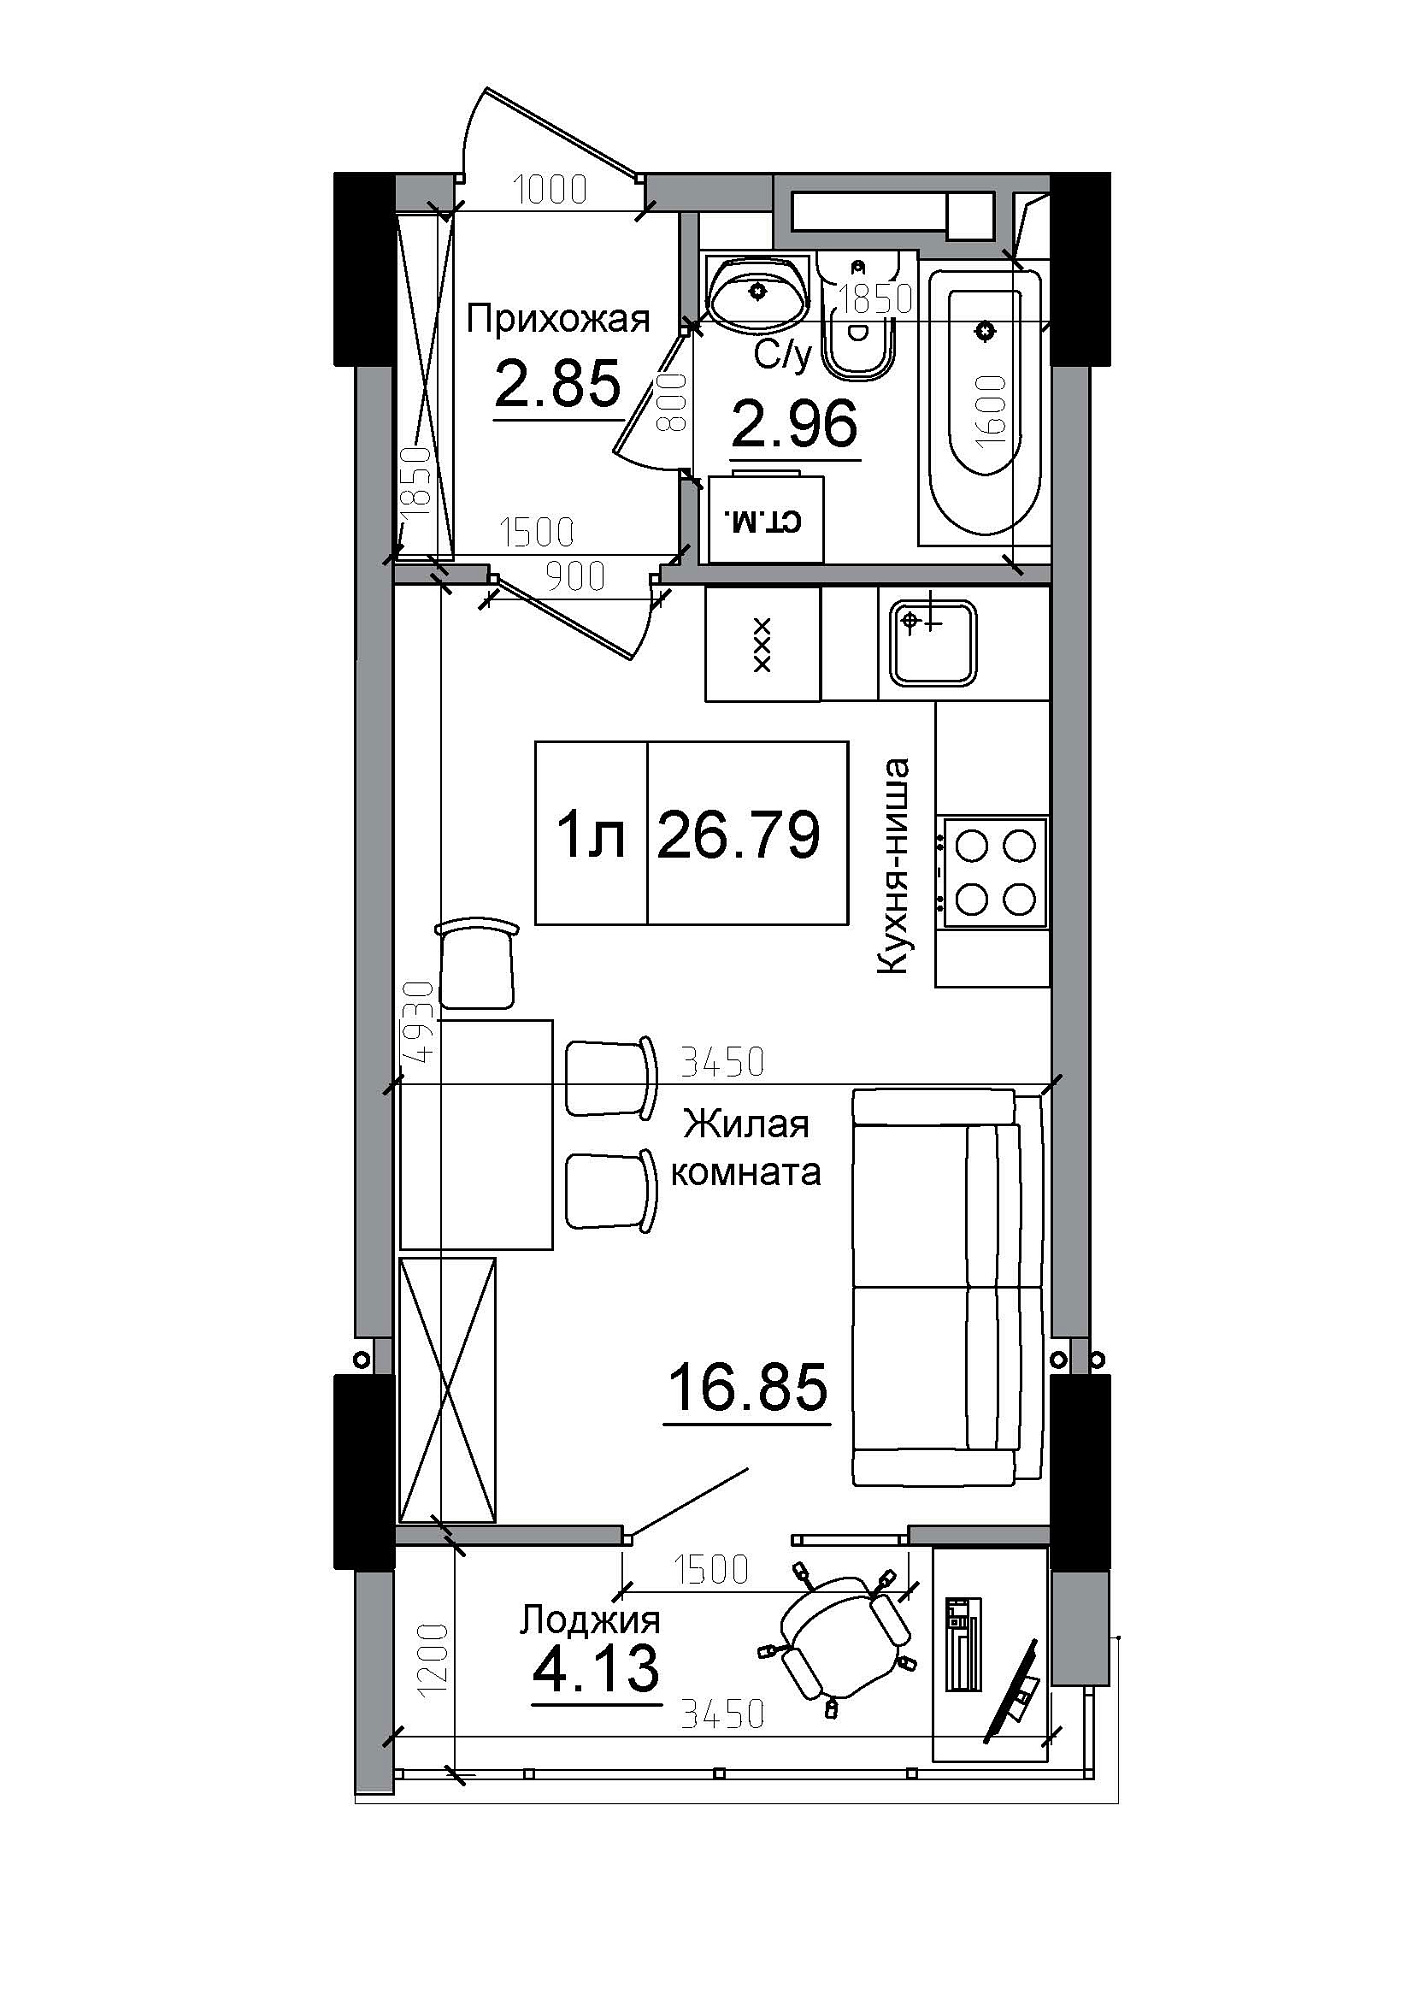 Планування Smart-квартира площею 26.79м2, AB-12-05/00014.